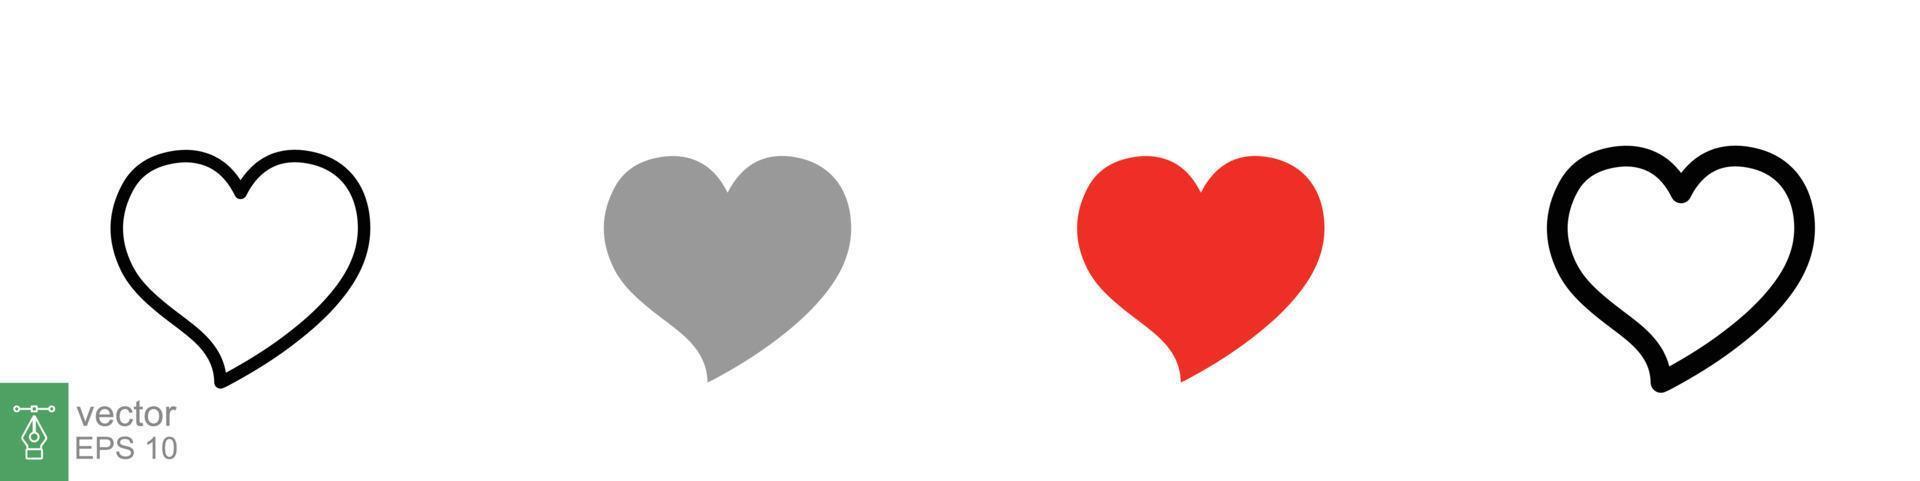 conjunto de ícones de coração. símbolo de amor em estilo plano, sólido e delineado. preto, coleção de forma de coração de amor vermelho, conceito romântico. projeto de ilustração vetorial isolado no fundo branco. eps 10. vetor